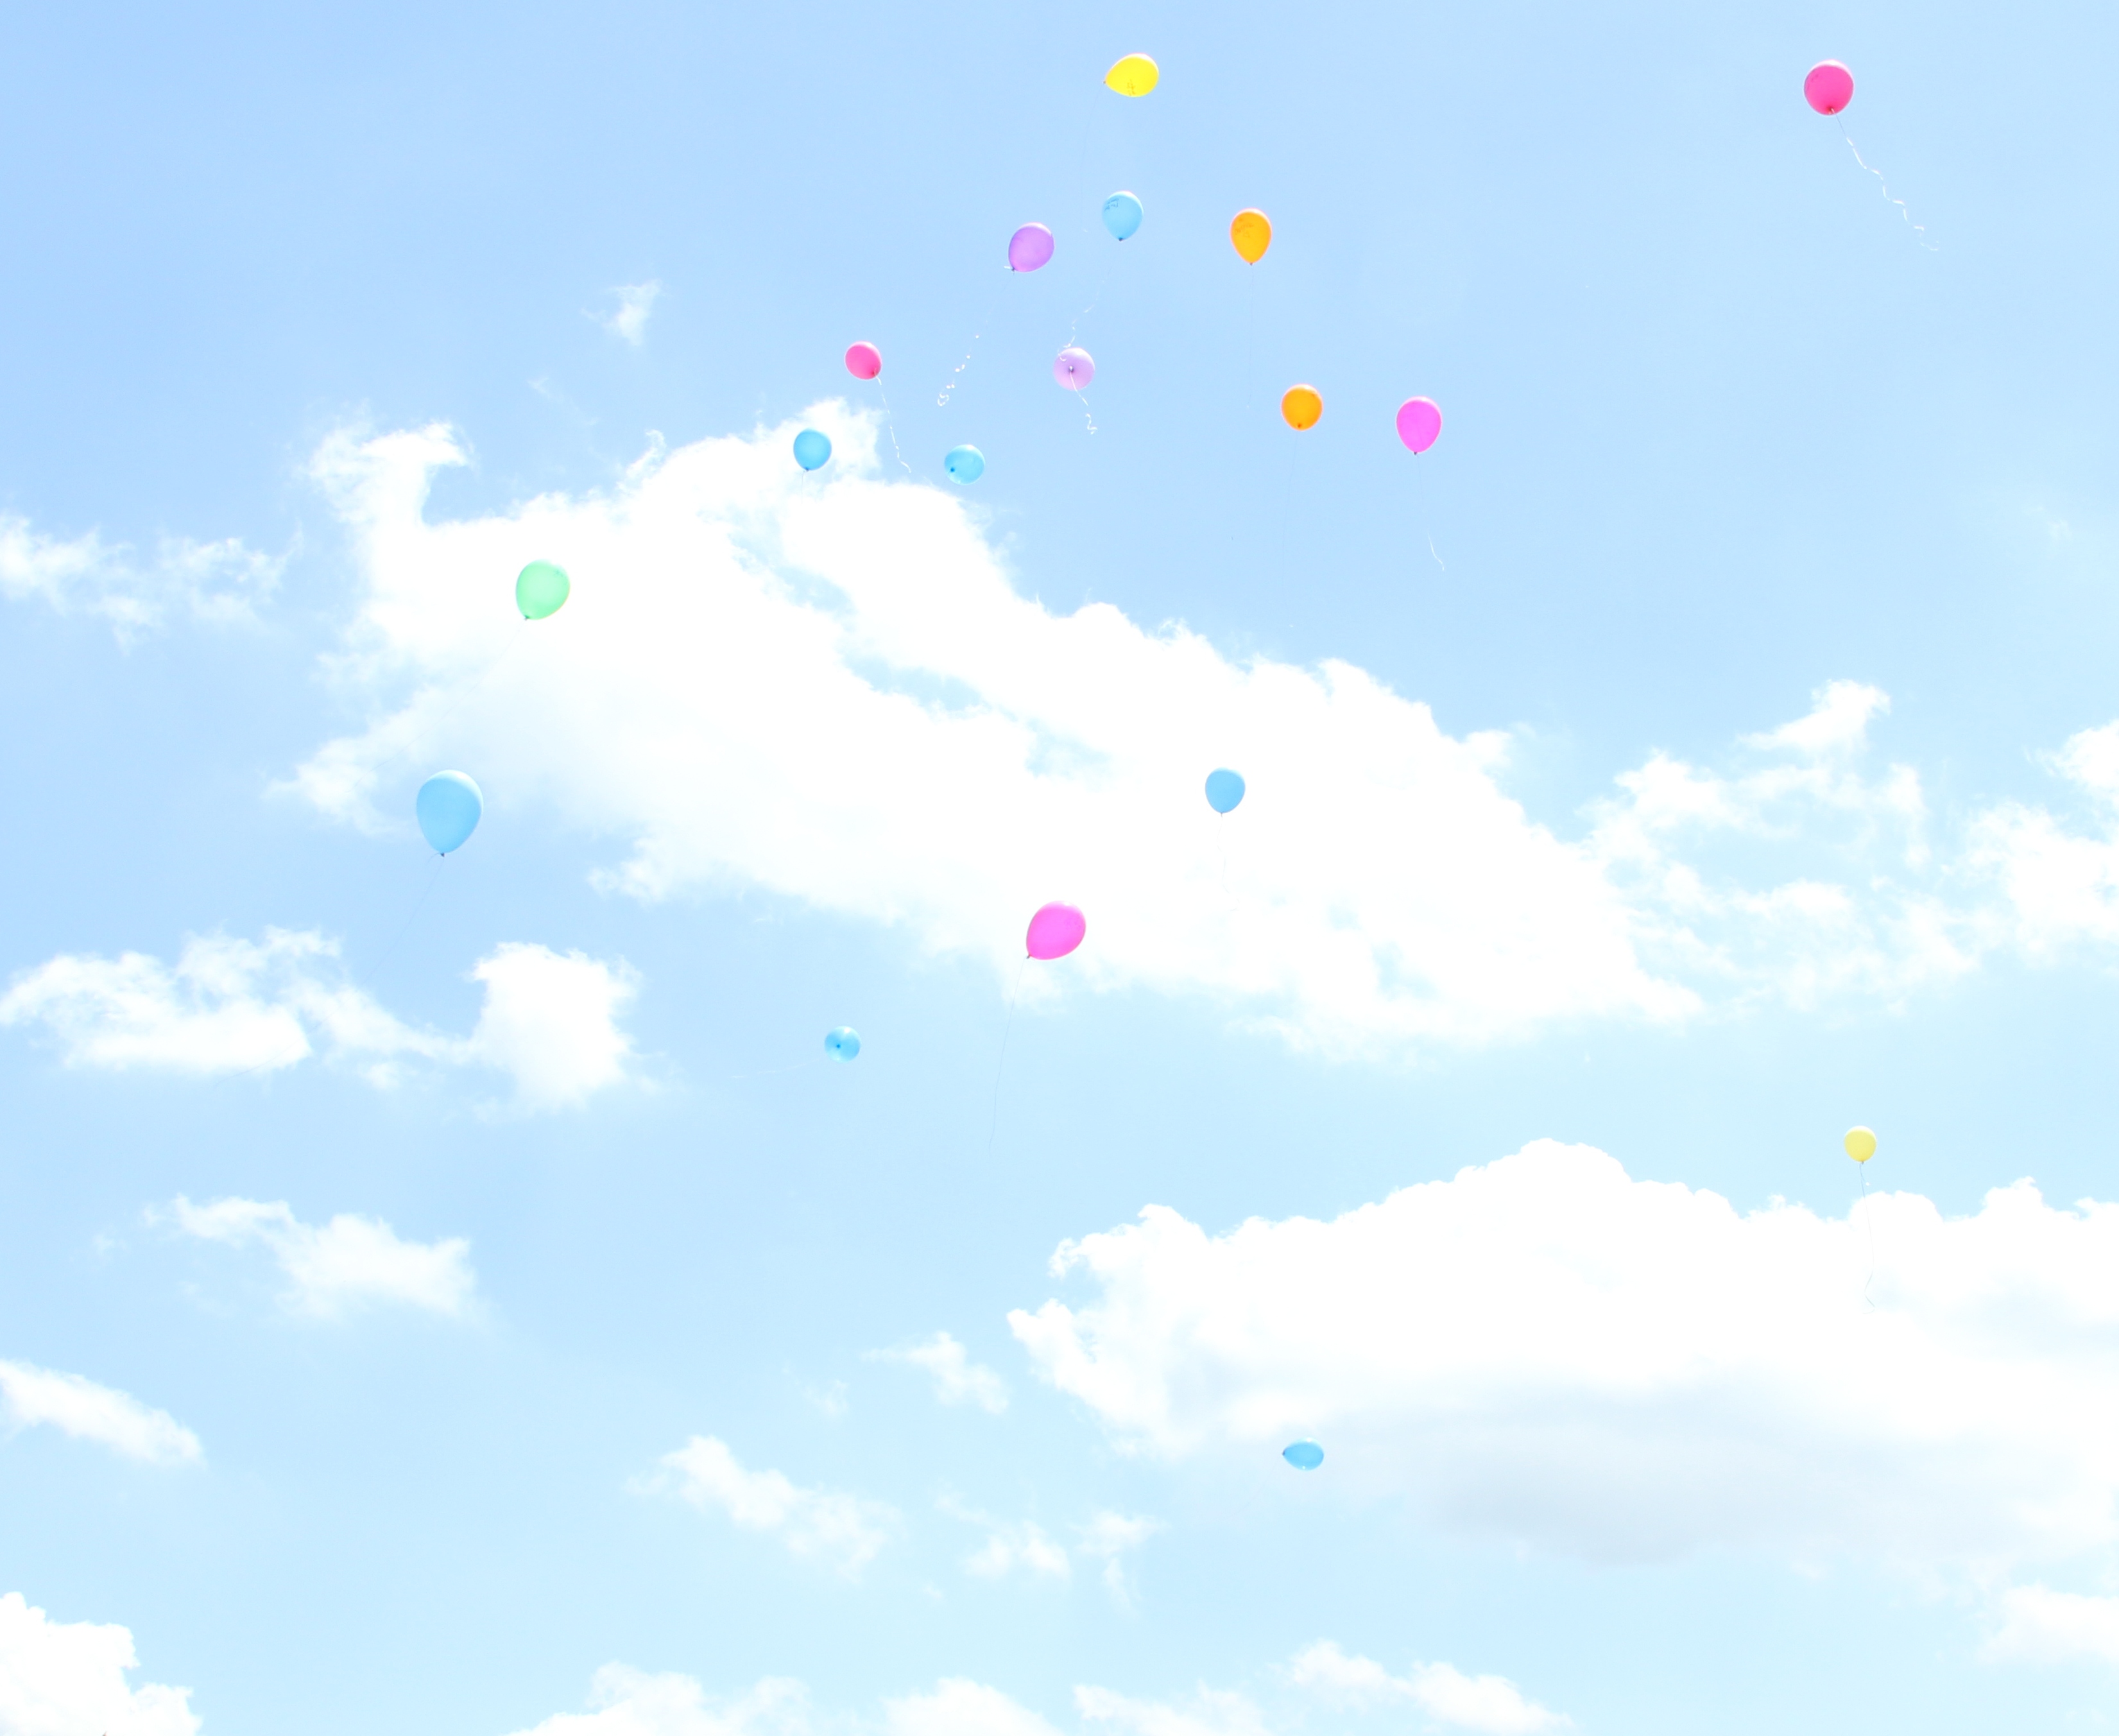 Balloons for Mark